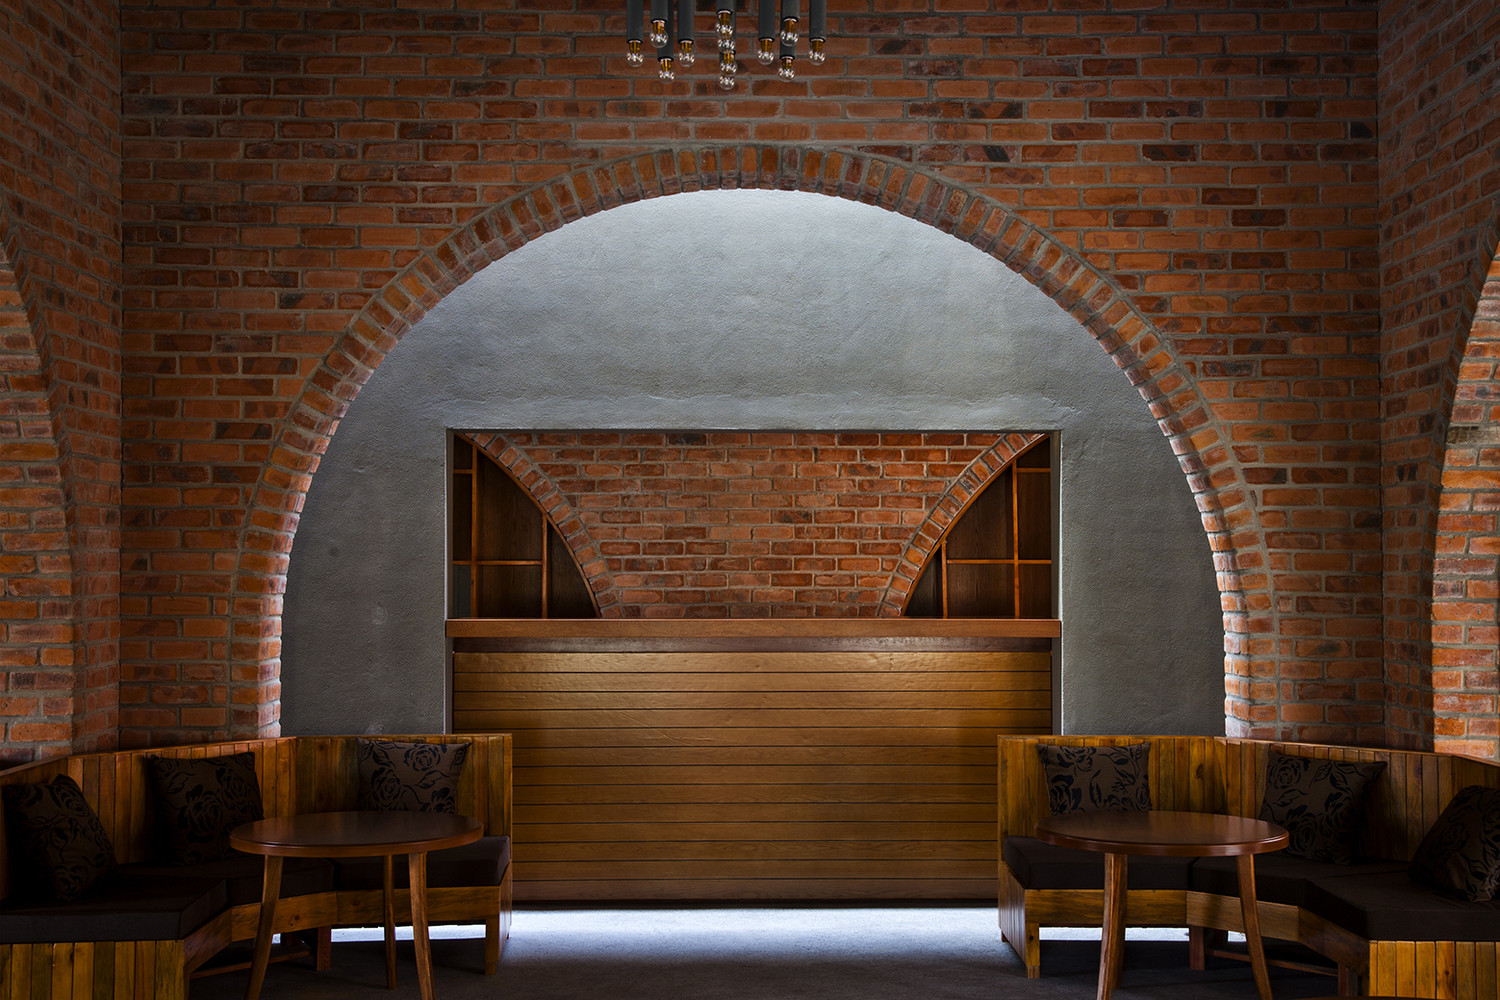 Hình ảnh bên trong quán cà phê ở Đồng Hới với tường gạch mộc, bàn ghế gỗ nhỏ xinh